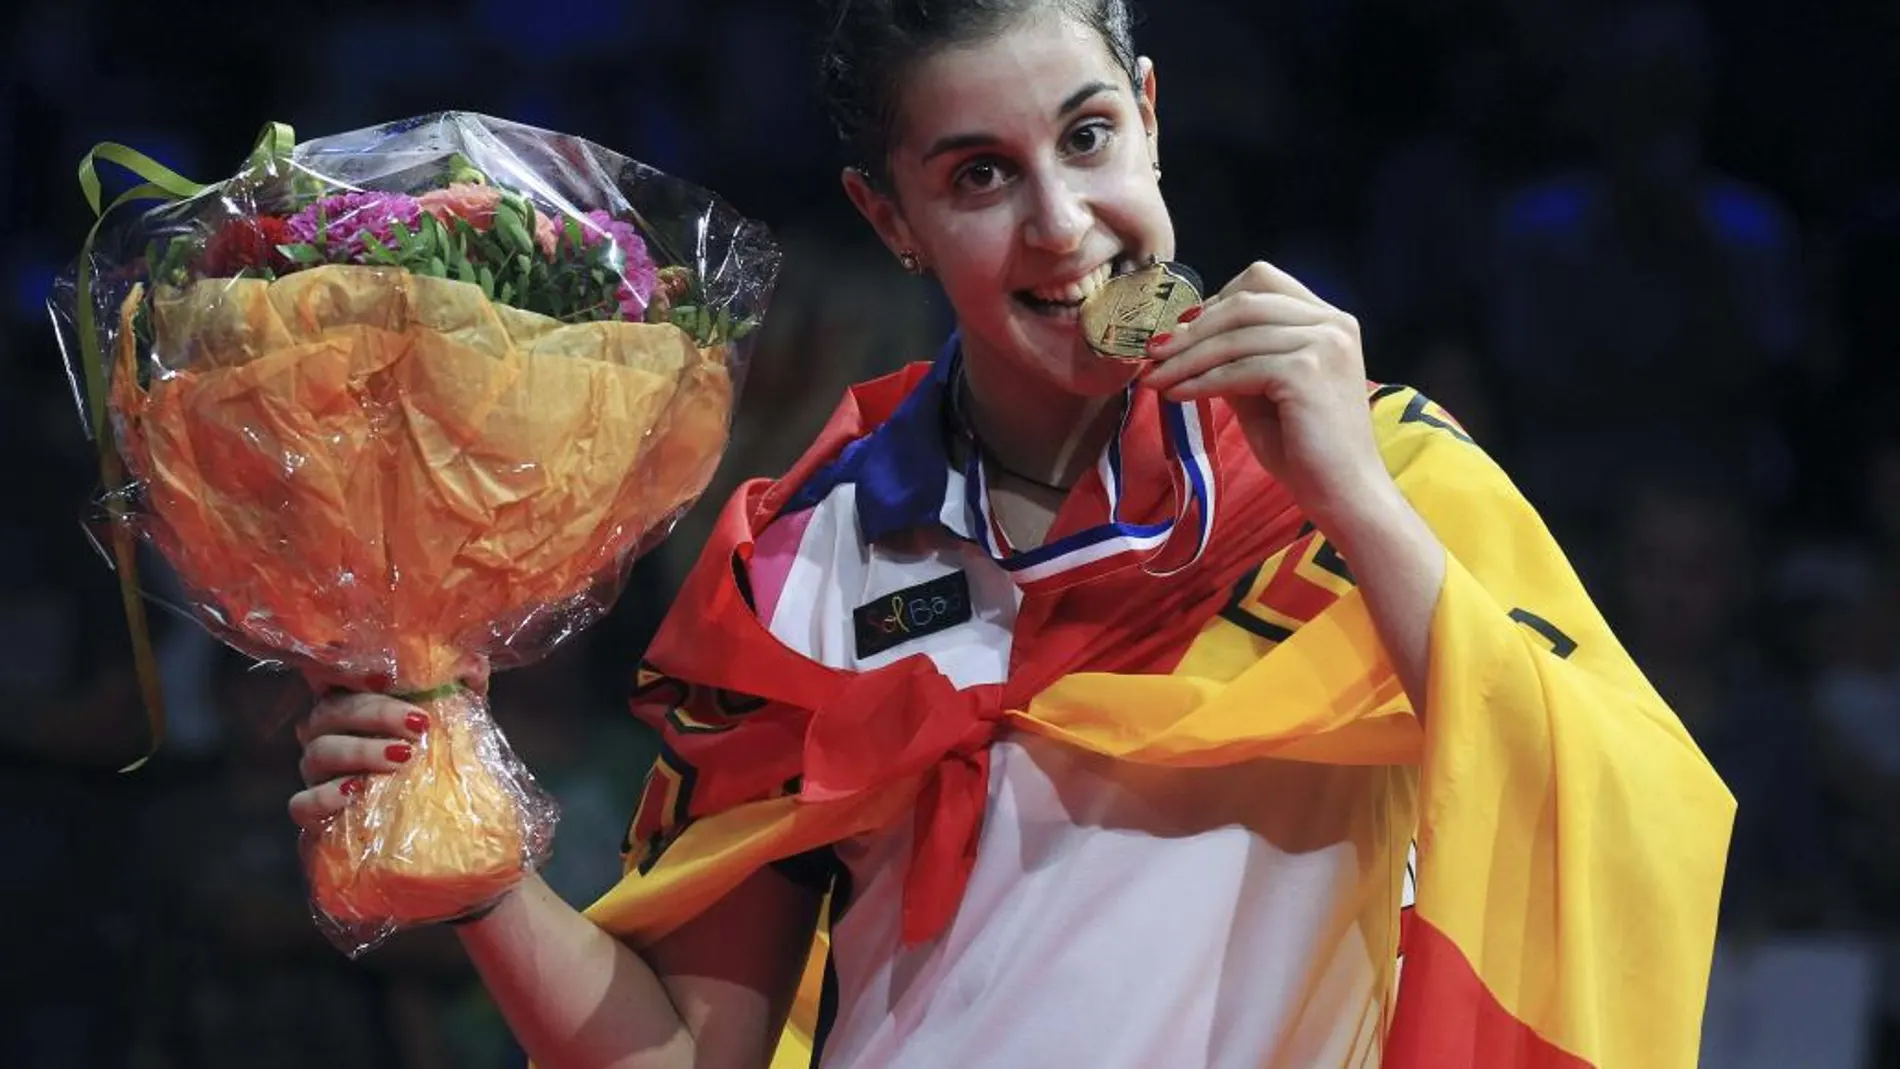 Fotografía facilitada por Badmintonphoto de la española Carolina Marín tras conseguir el oro histórico para el bádminton nacional, en agosto de 2014